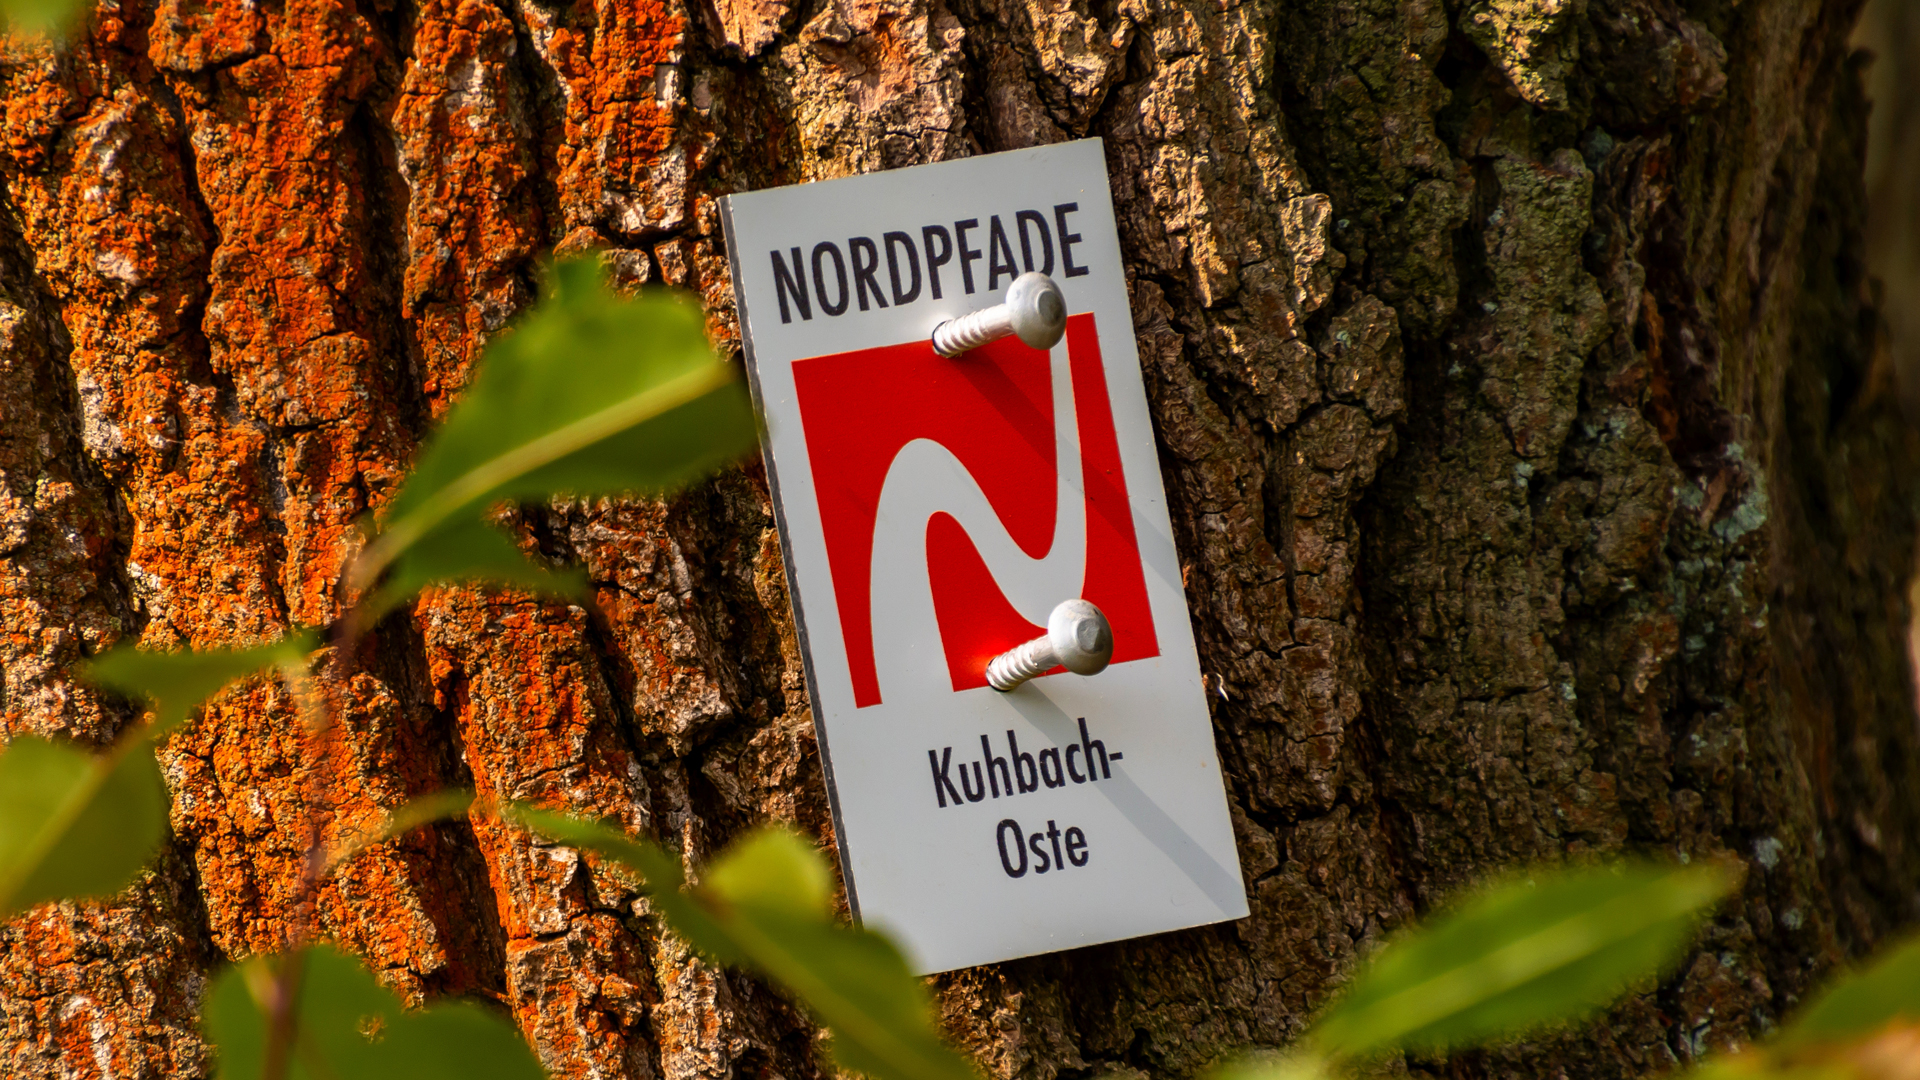 Das Logo vom NORDPFAD Kuhbach-Oste